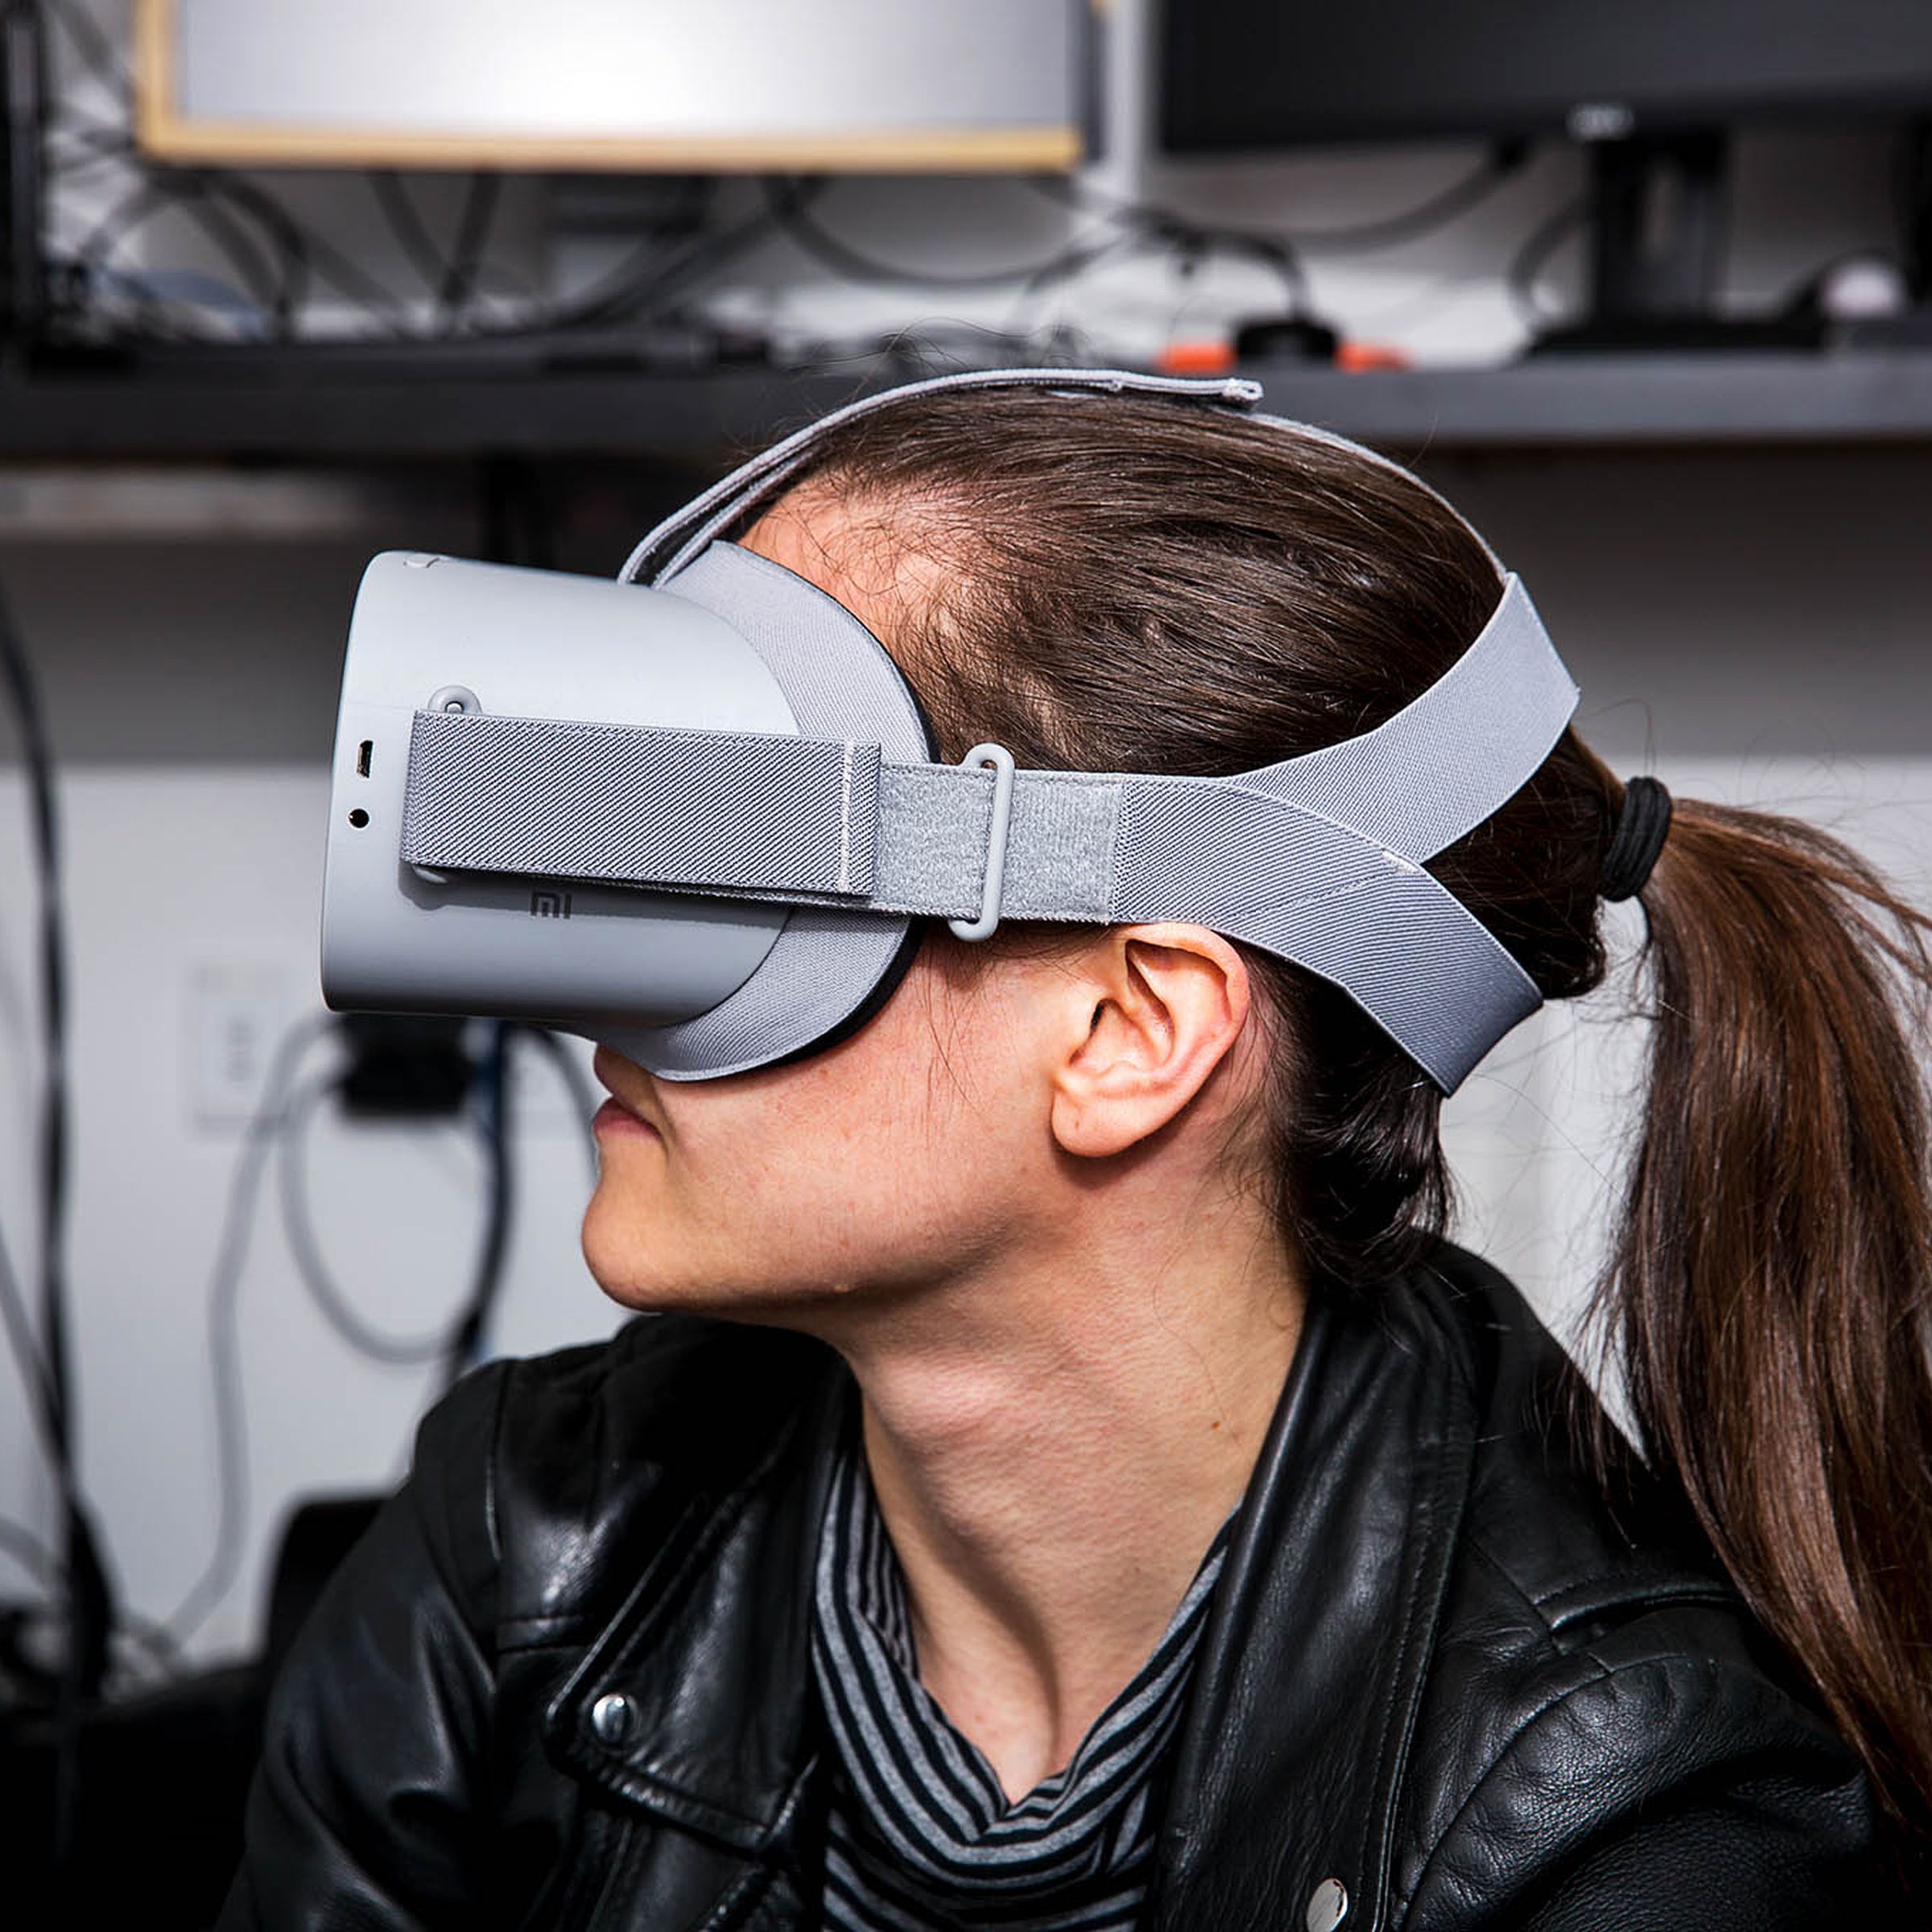 The Oculus Go, originally released in 2018.